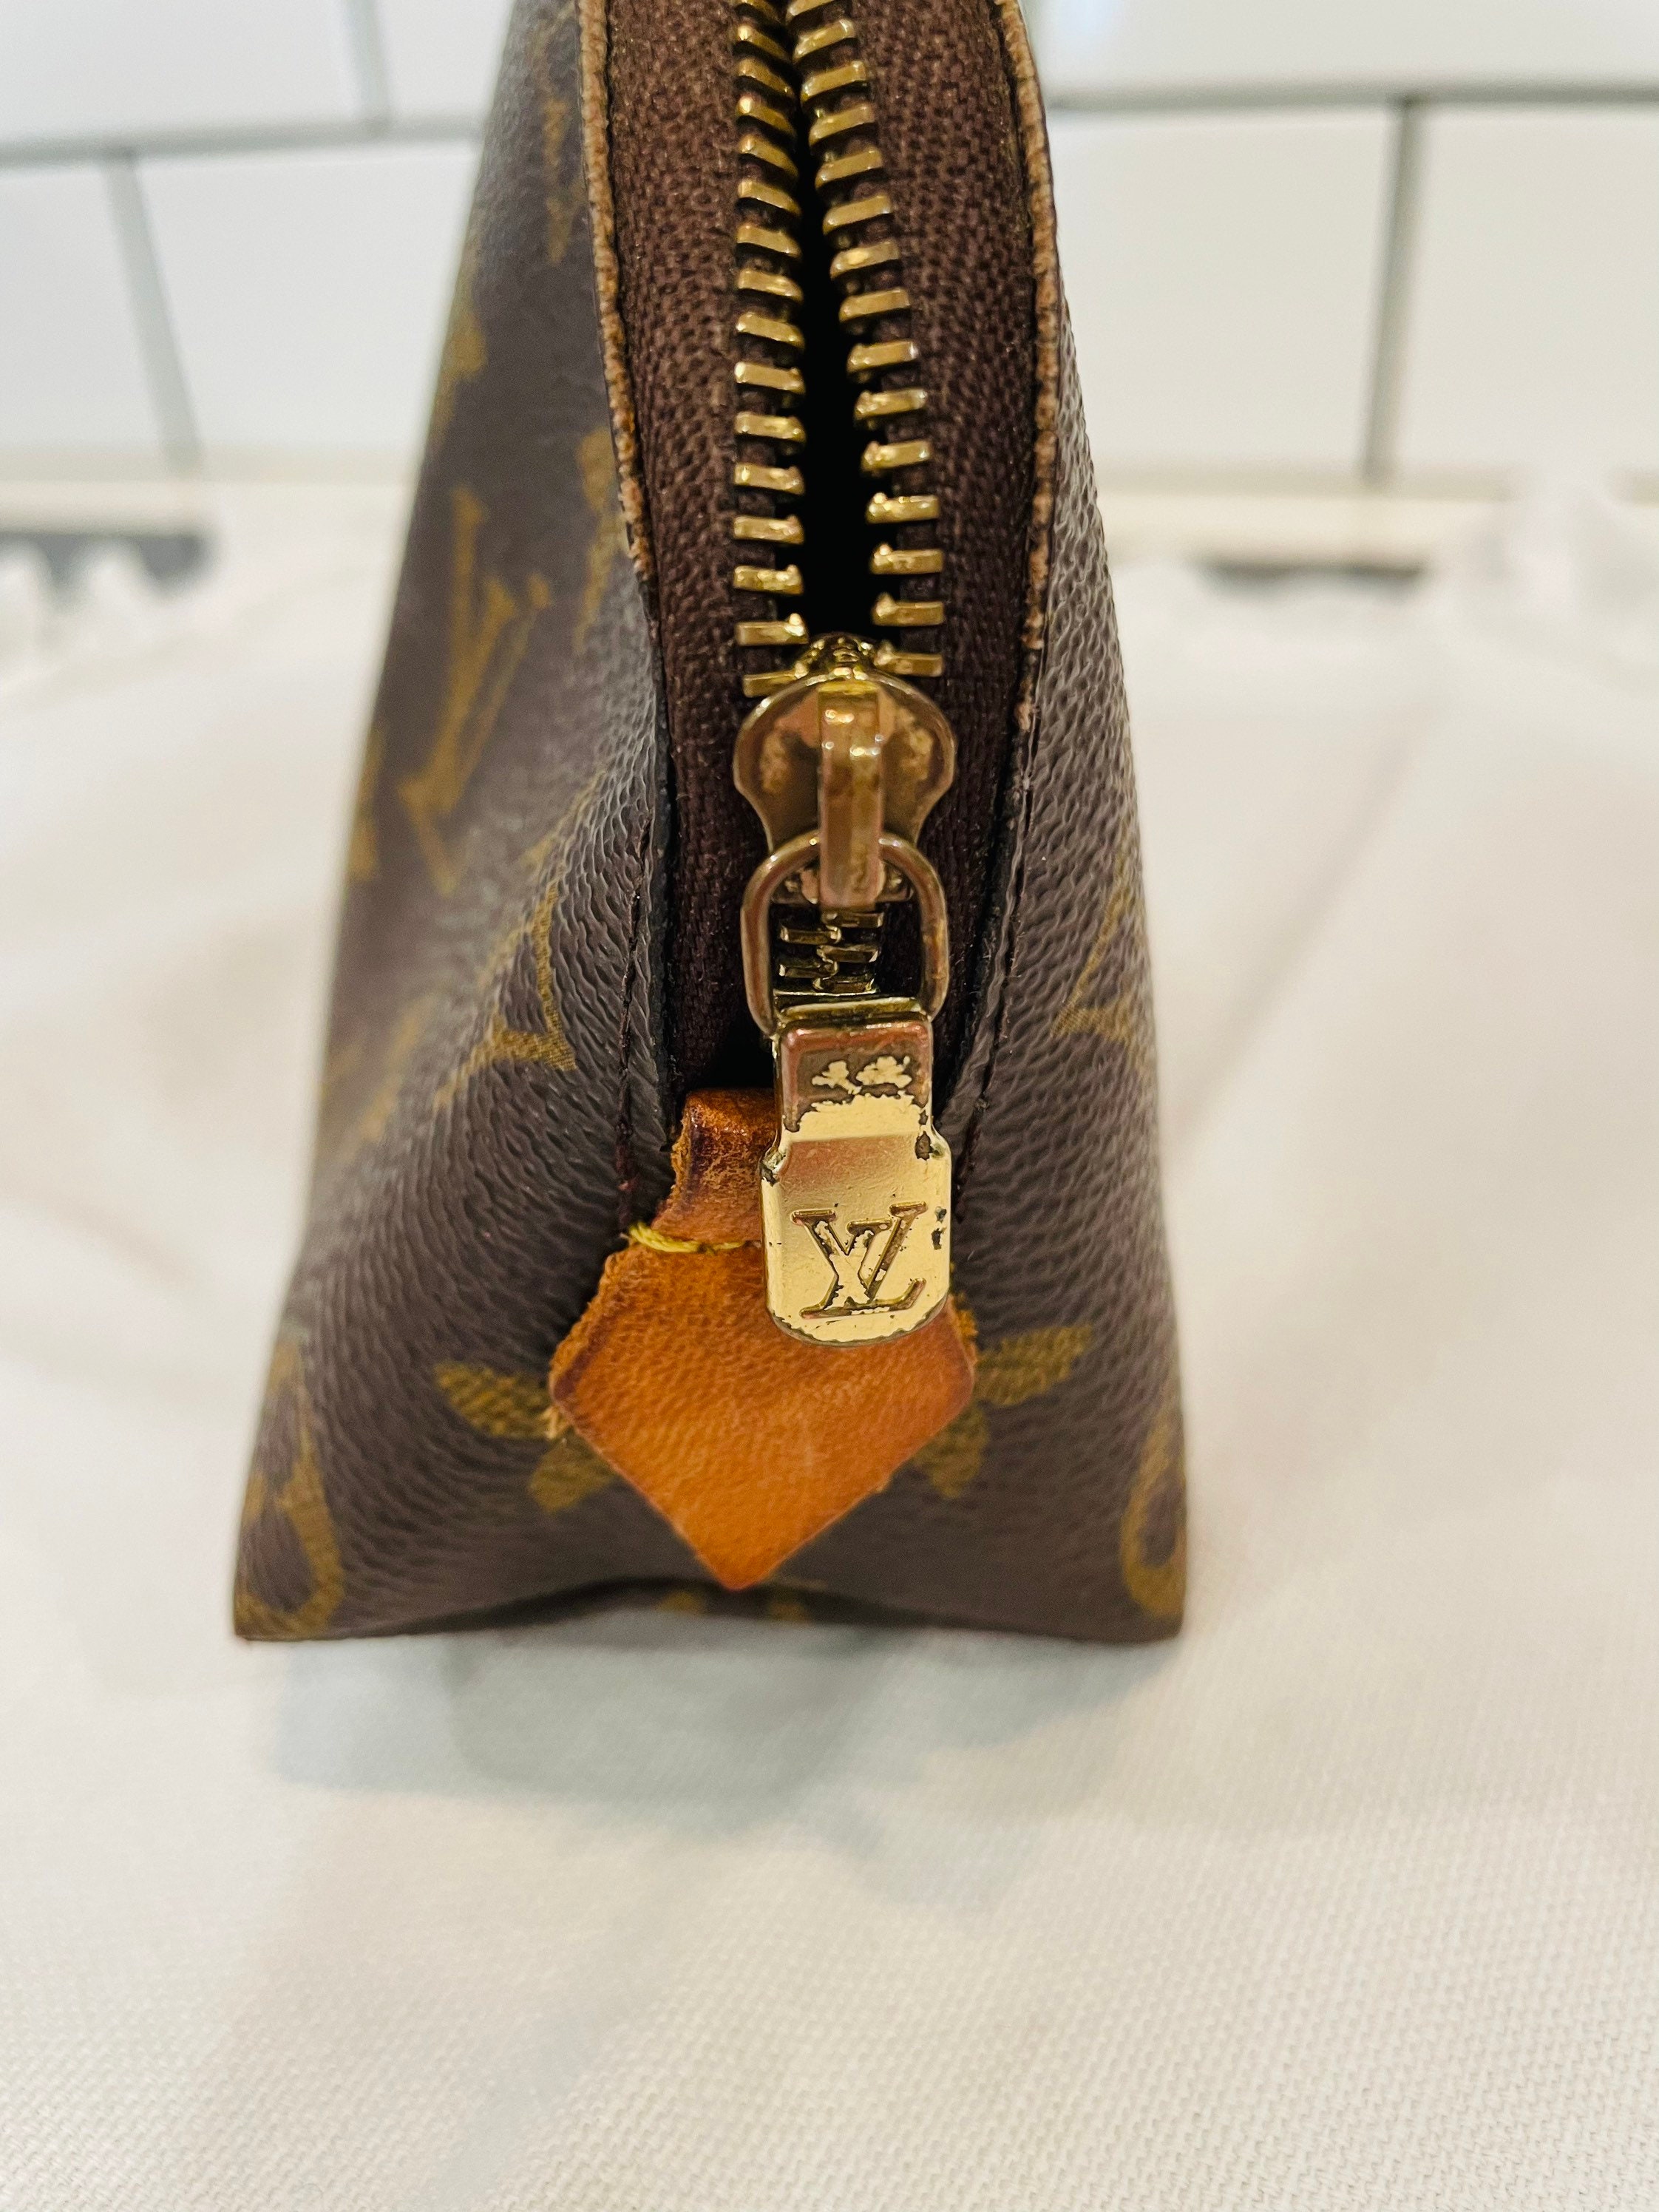 Louis Vuitton inspired makeup brush holder. Decal in metallic gold